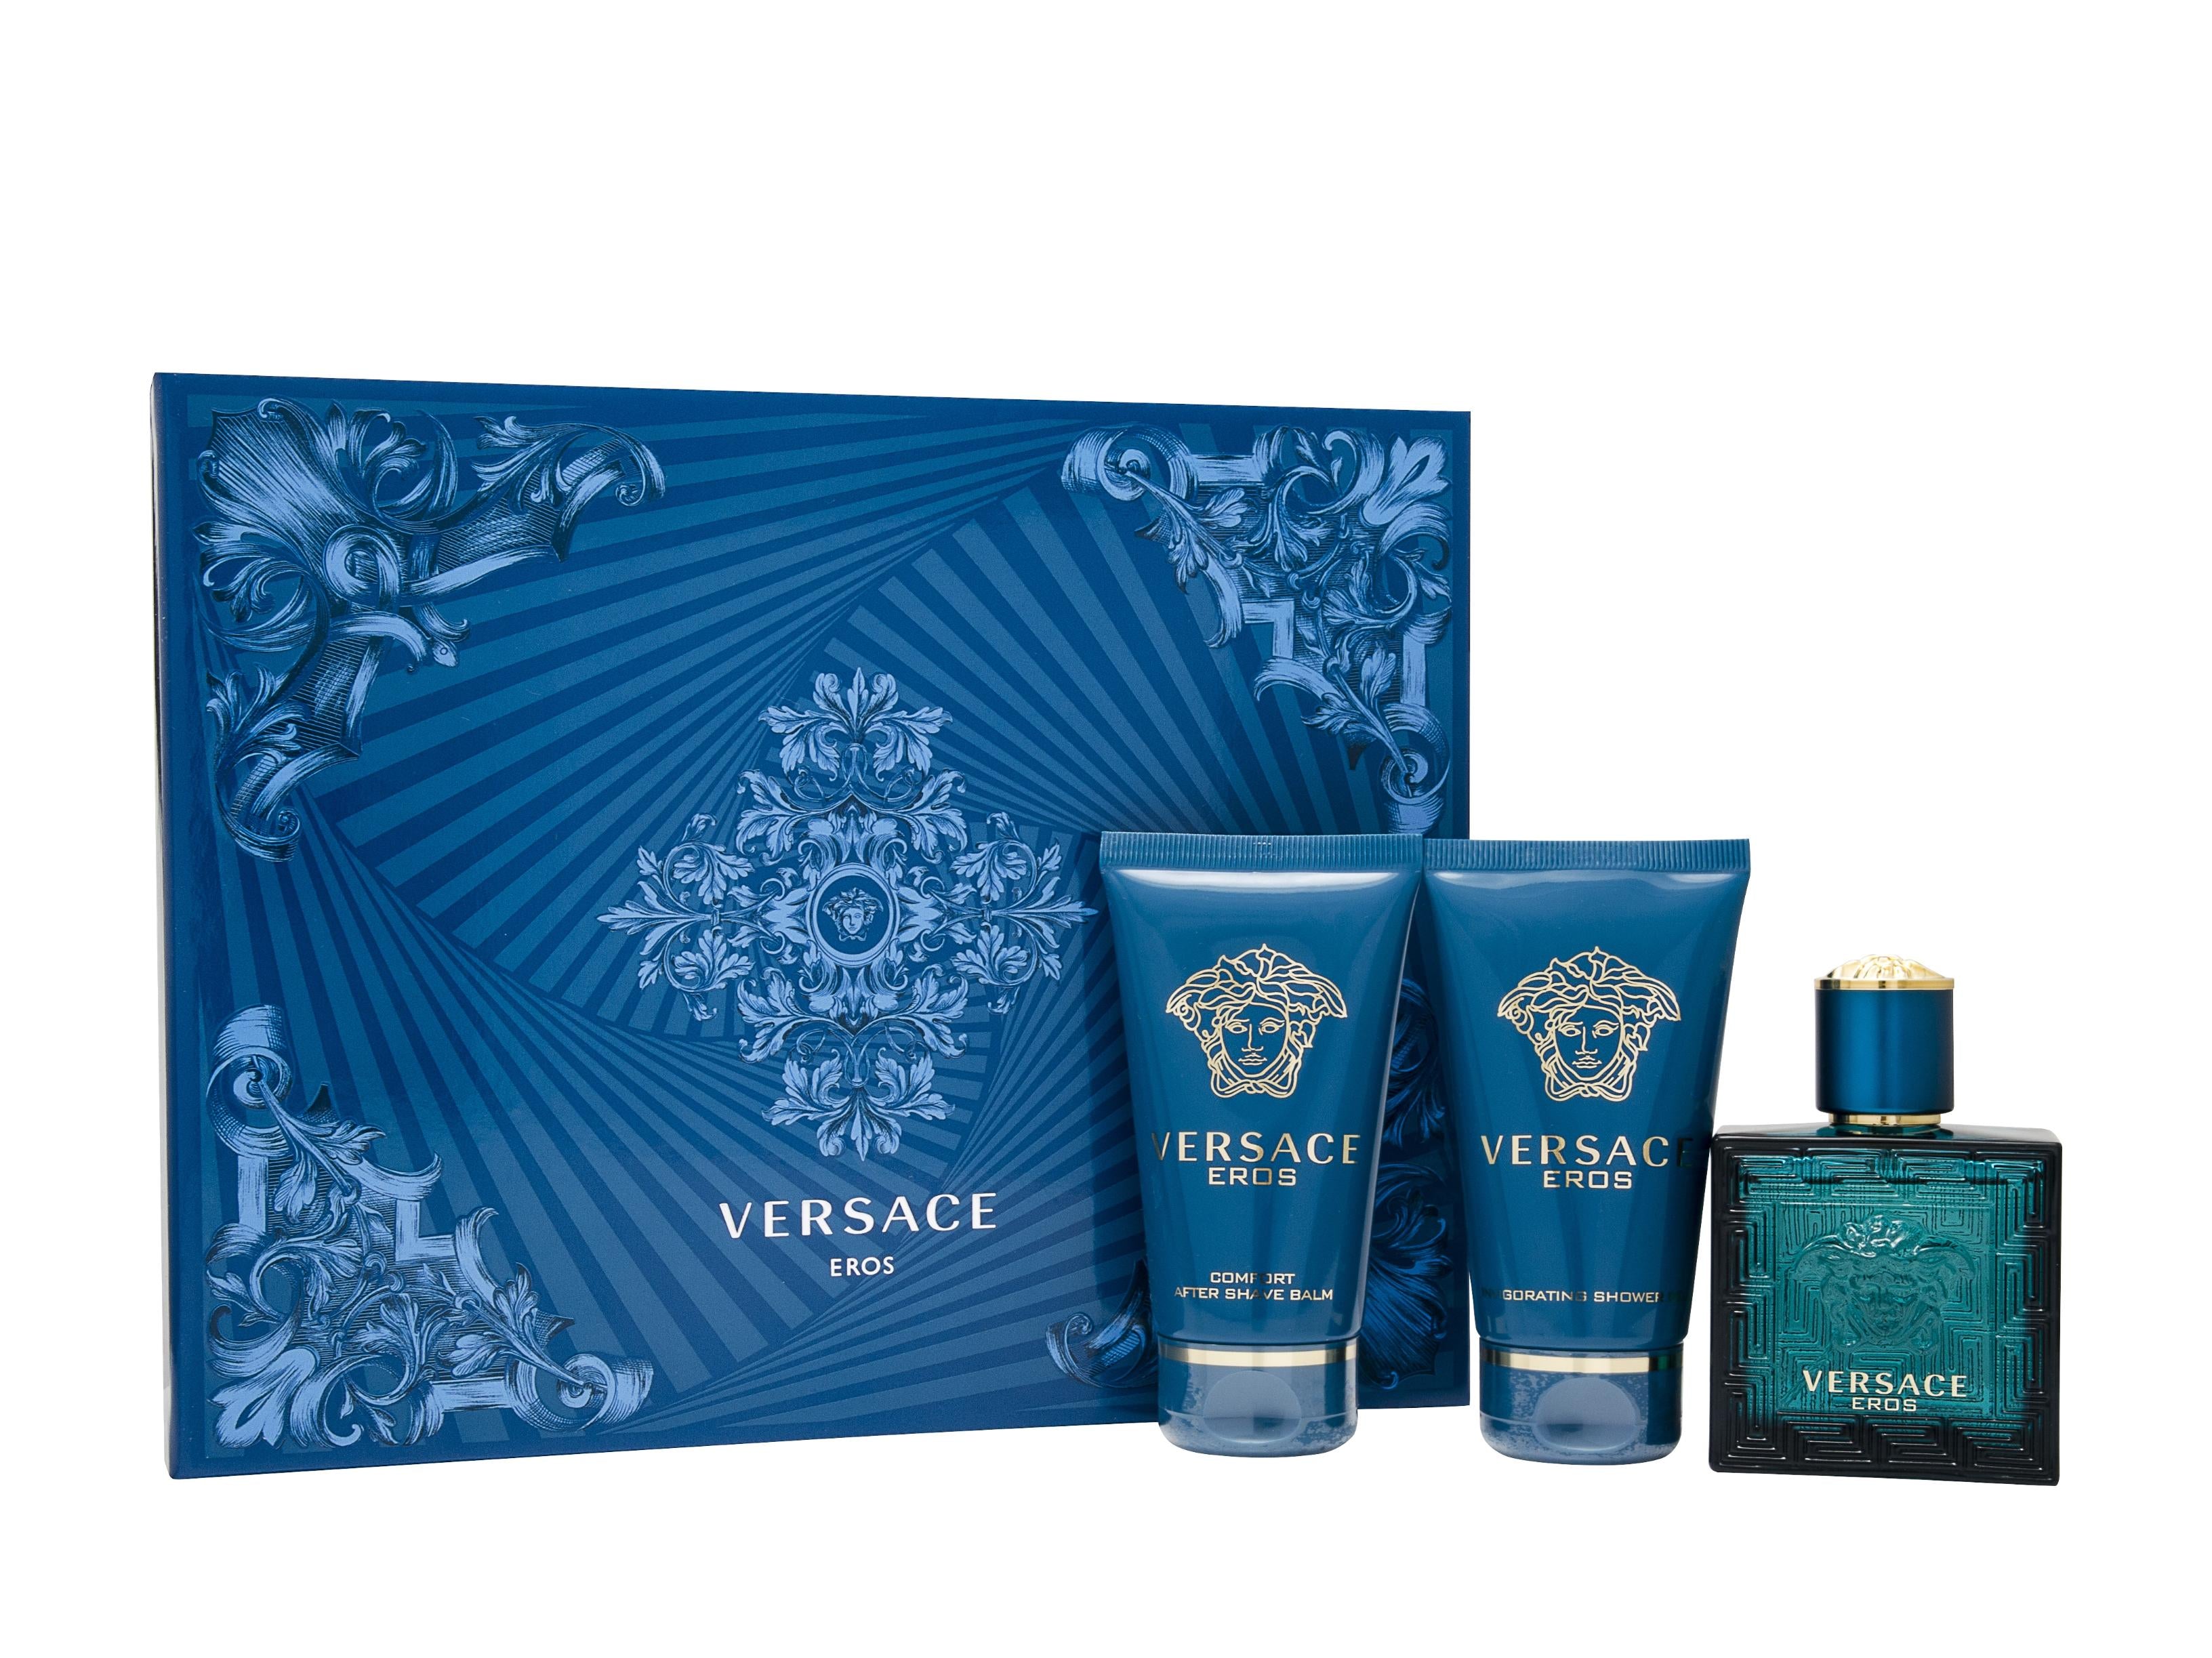 View Versace Eros Gift Set 50ml EDT 50ml Aftershave Balm 50ml Shower Gel information